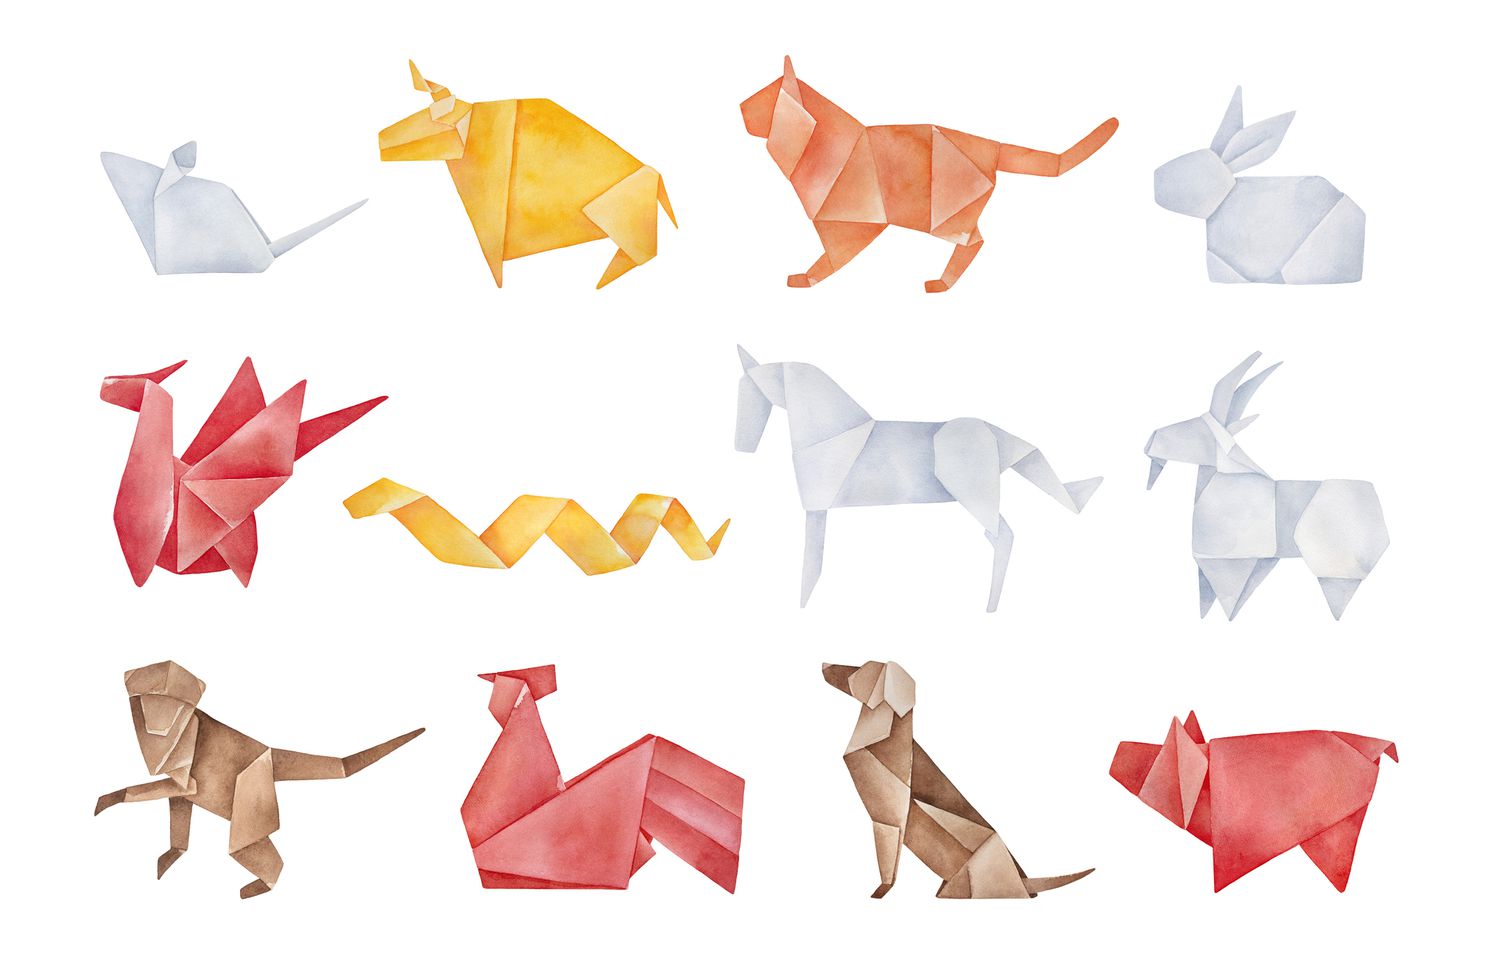 Gefaltetes Origami-Paket mit zwölf traditionellen chinesischen Tierkreiszeichen. Rot, gelb, braun, orange, hellgraue Farben. Handgezeichnete aquarellierte Grafik